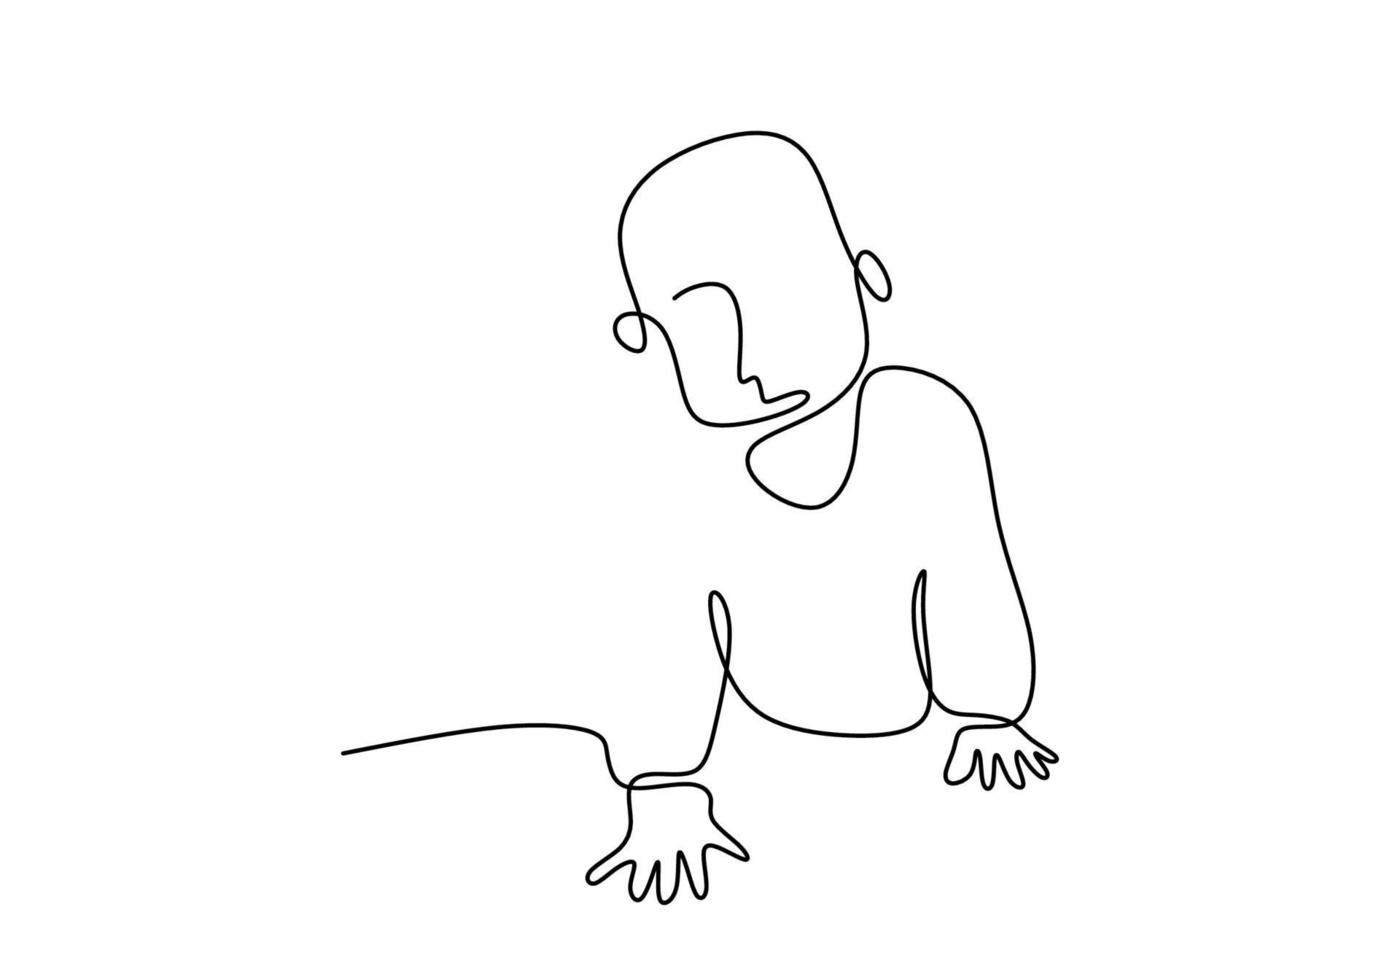 kruipende baby continu een enkele lijn hand tekenen geïsoleerd op een witte achtergrond. klein kind kruipen in de minimalistische stijl van de grond. kind gezondheid en ontwikkeling concept. vector illustratie